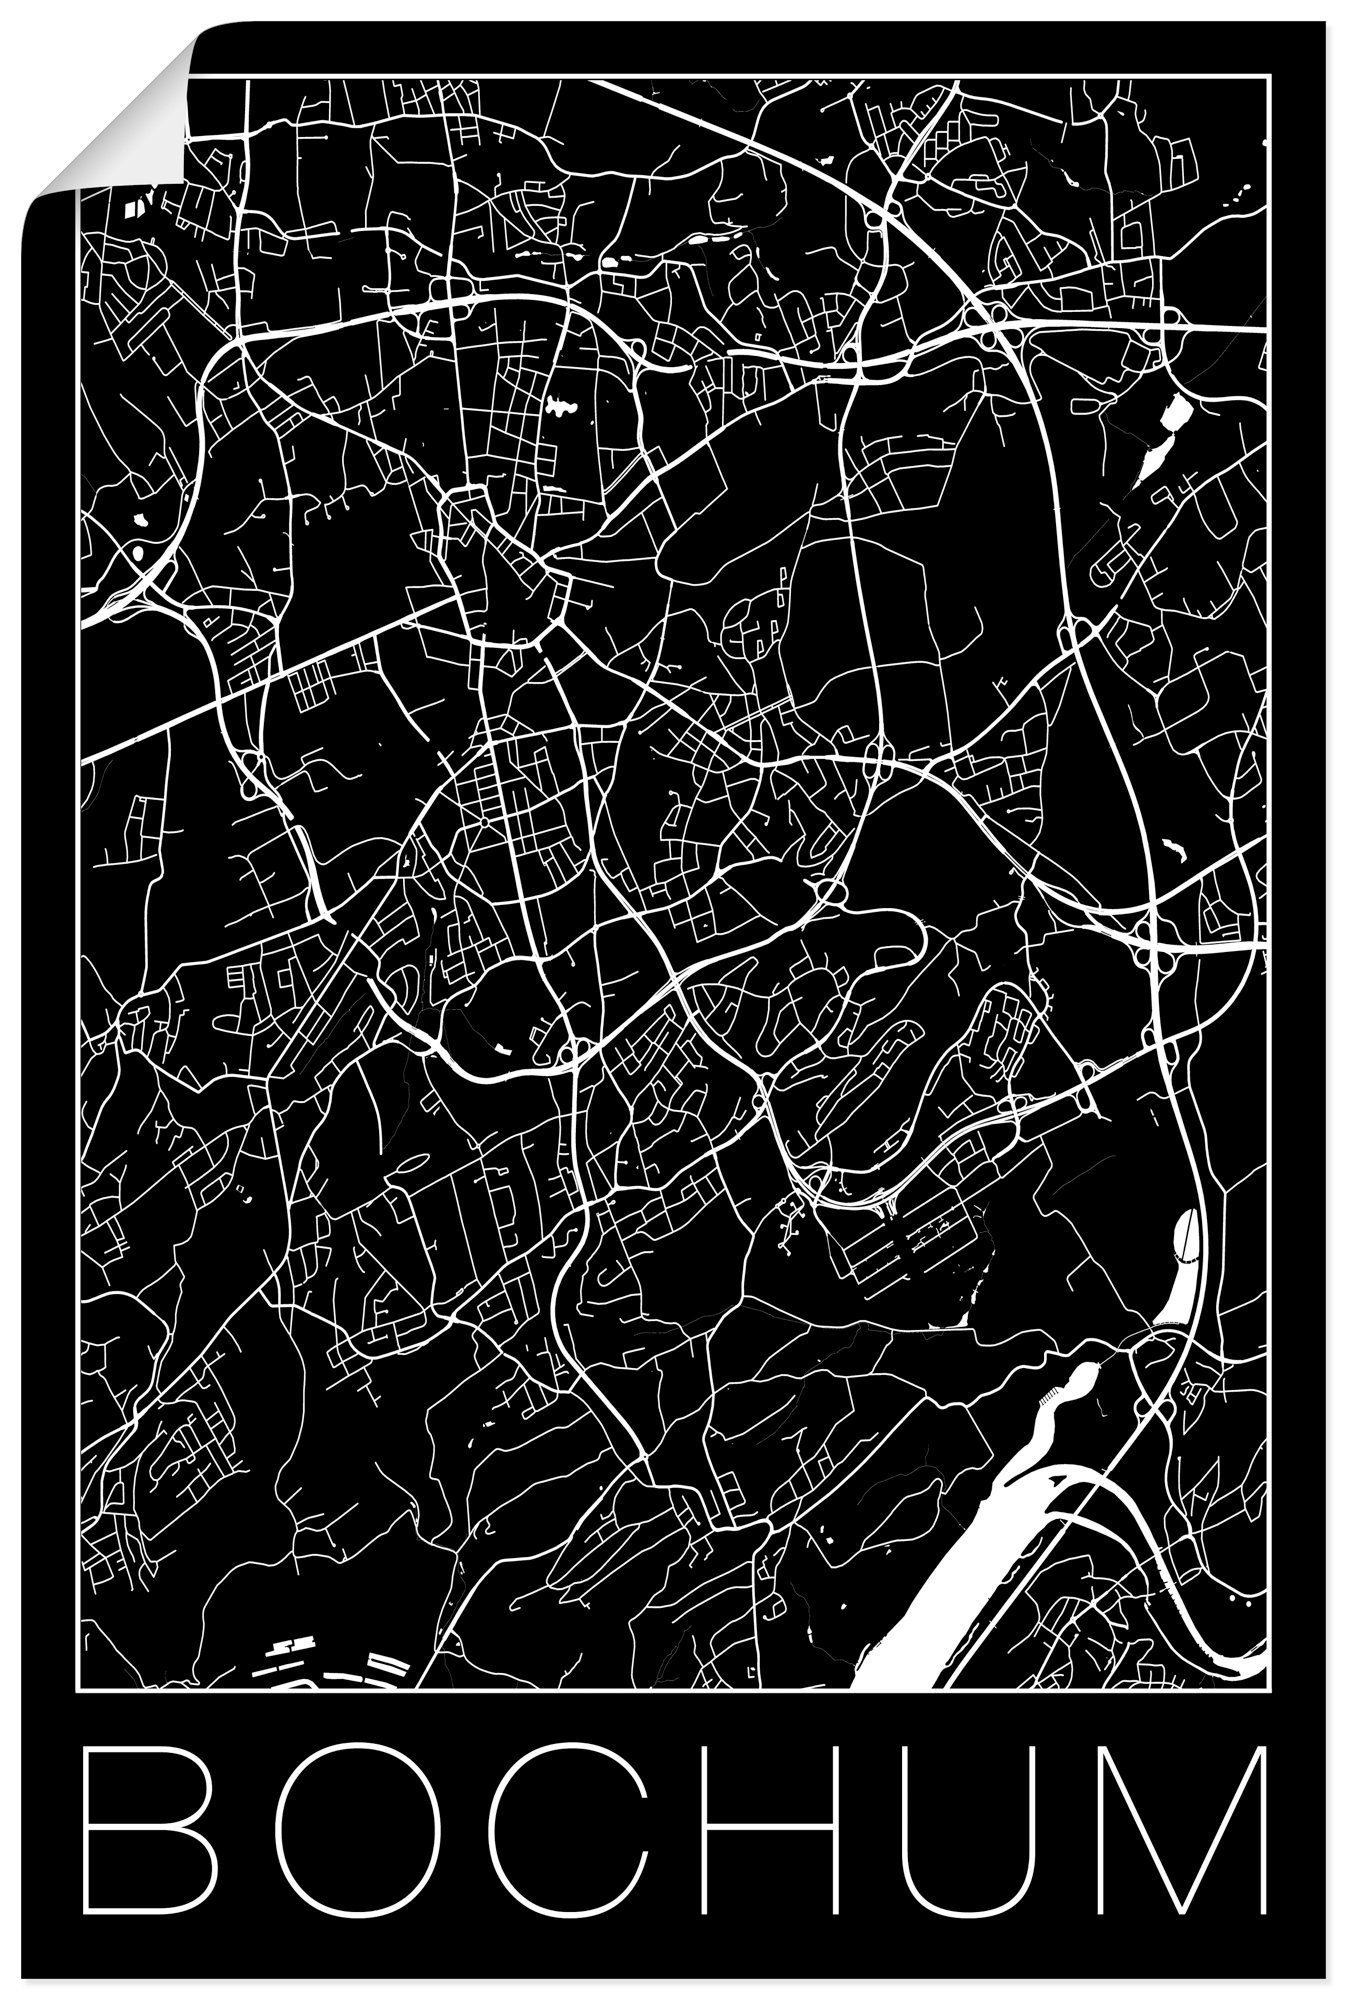 Artland Artprint Retro kaart Bochum Duitsland zwart in vele afmetingen & productsoorten - artprint van aluminium / artprint voor buiten, artprint op linnen, poster, muursticker / w